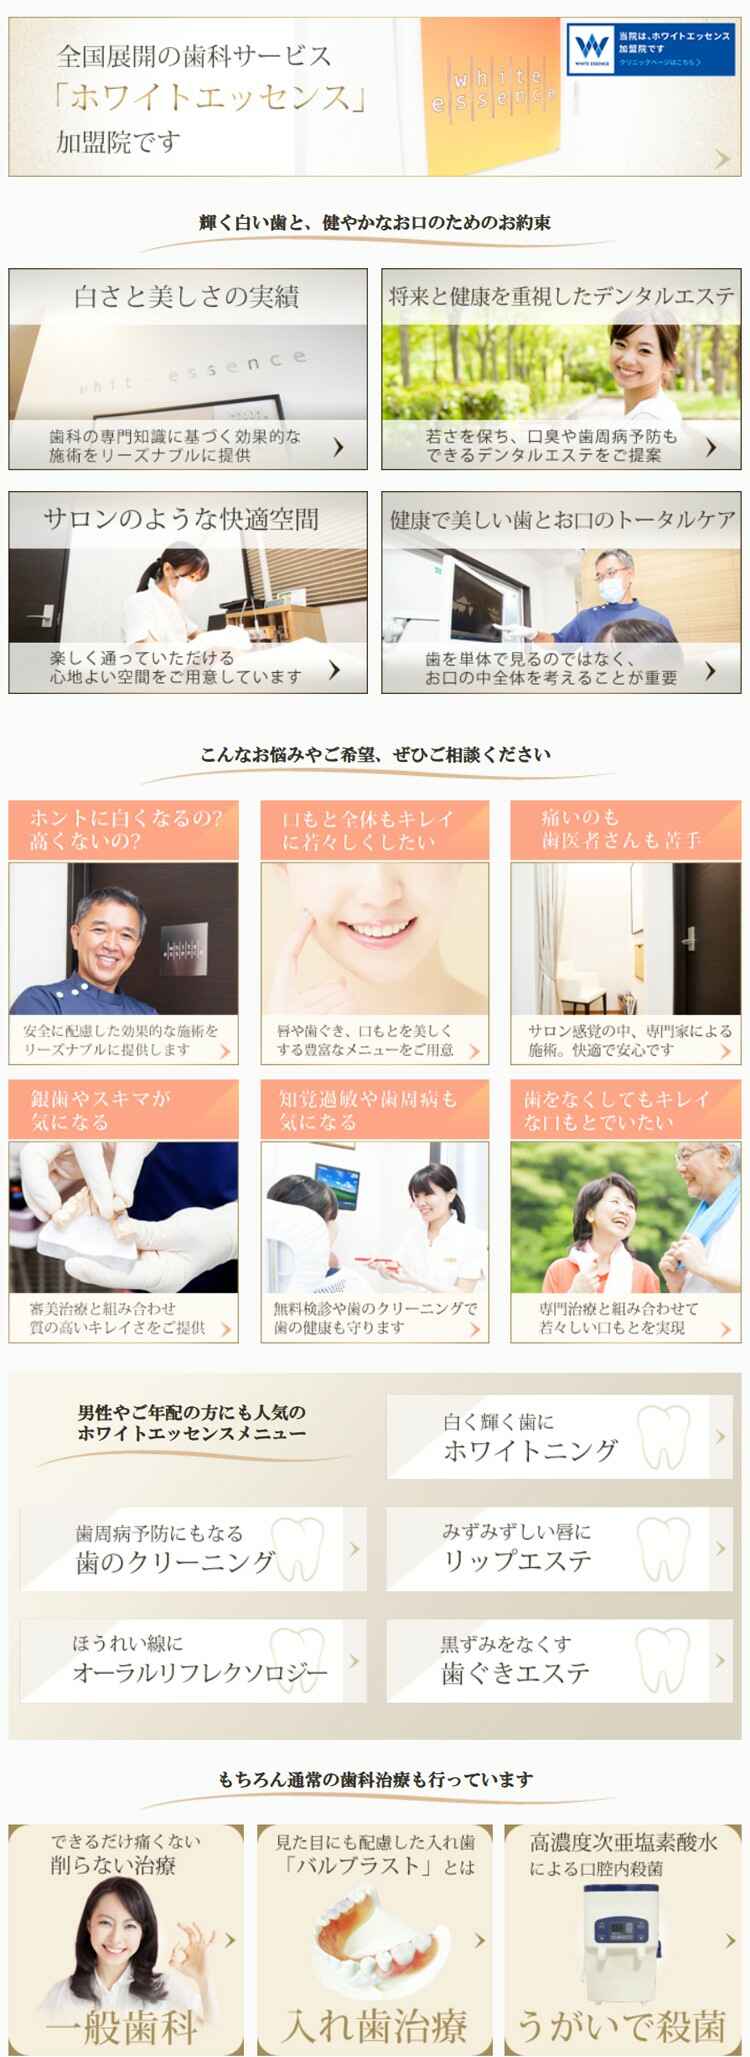 小松歯科医院のお知らせ内容